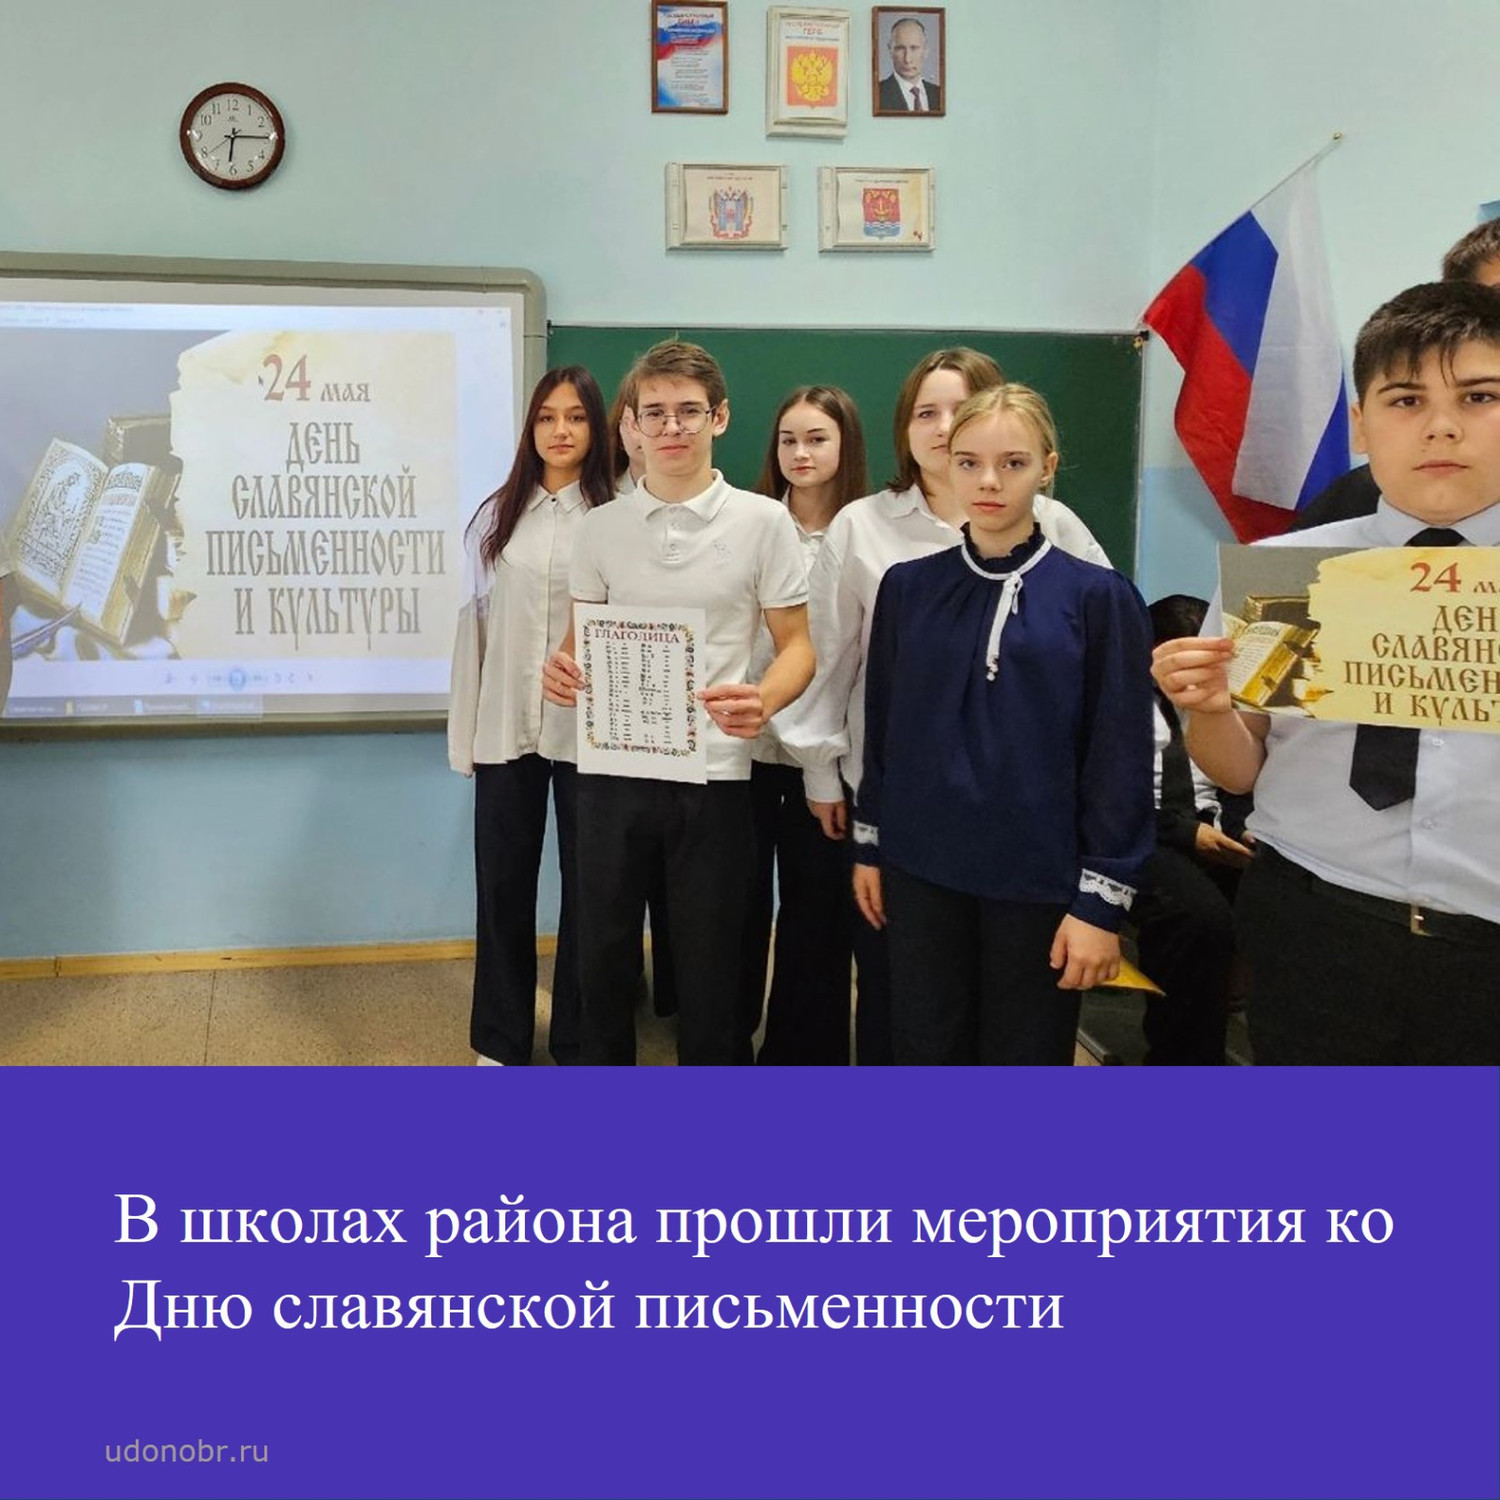 В школах района прошли мероприятия ко Дню славянской письменности